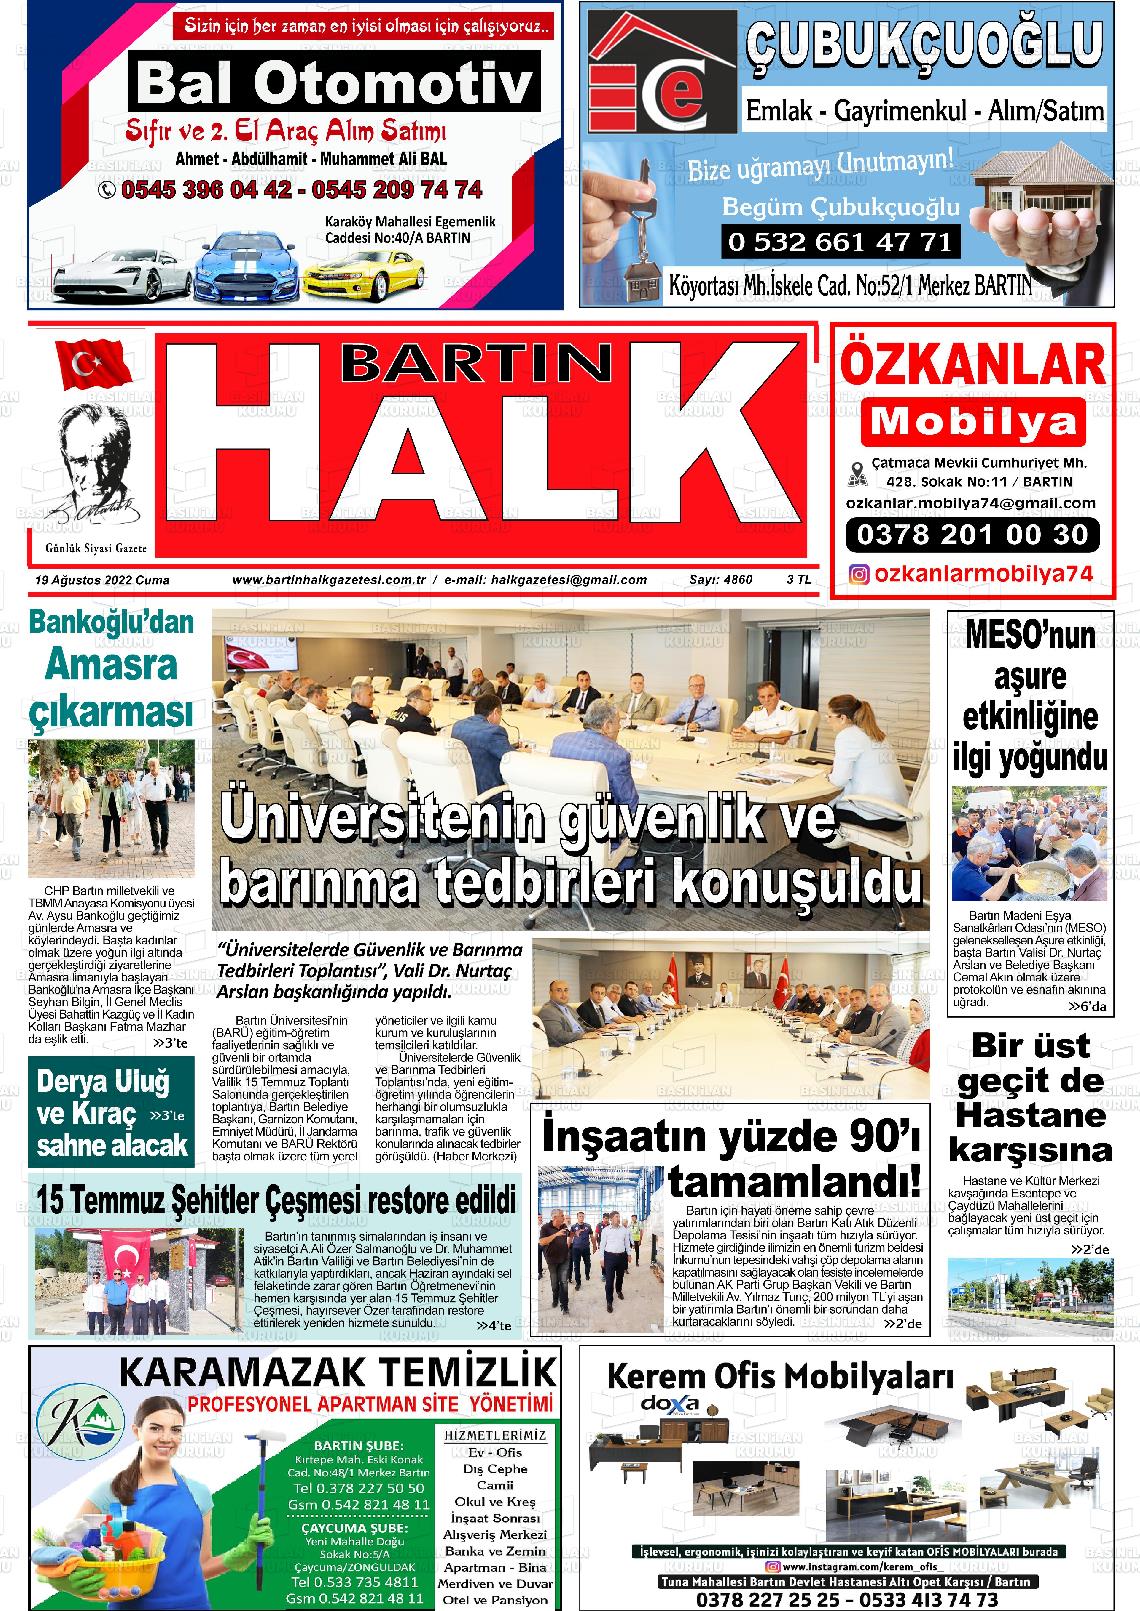 19 Ağustos 2022 Bartın Halk Gazete Manşeti